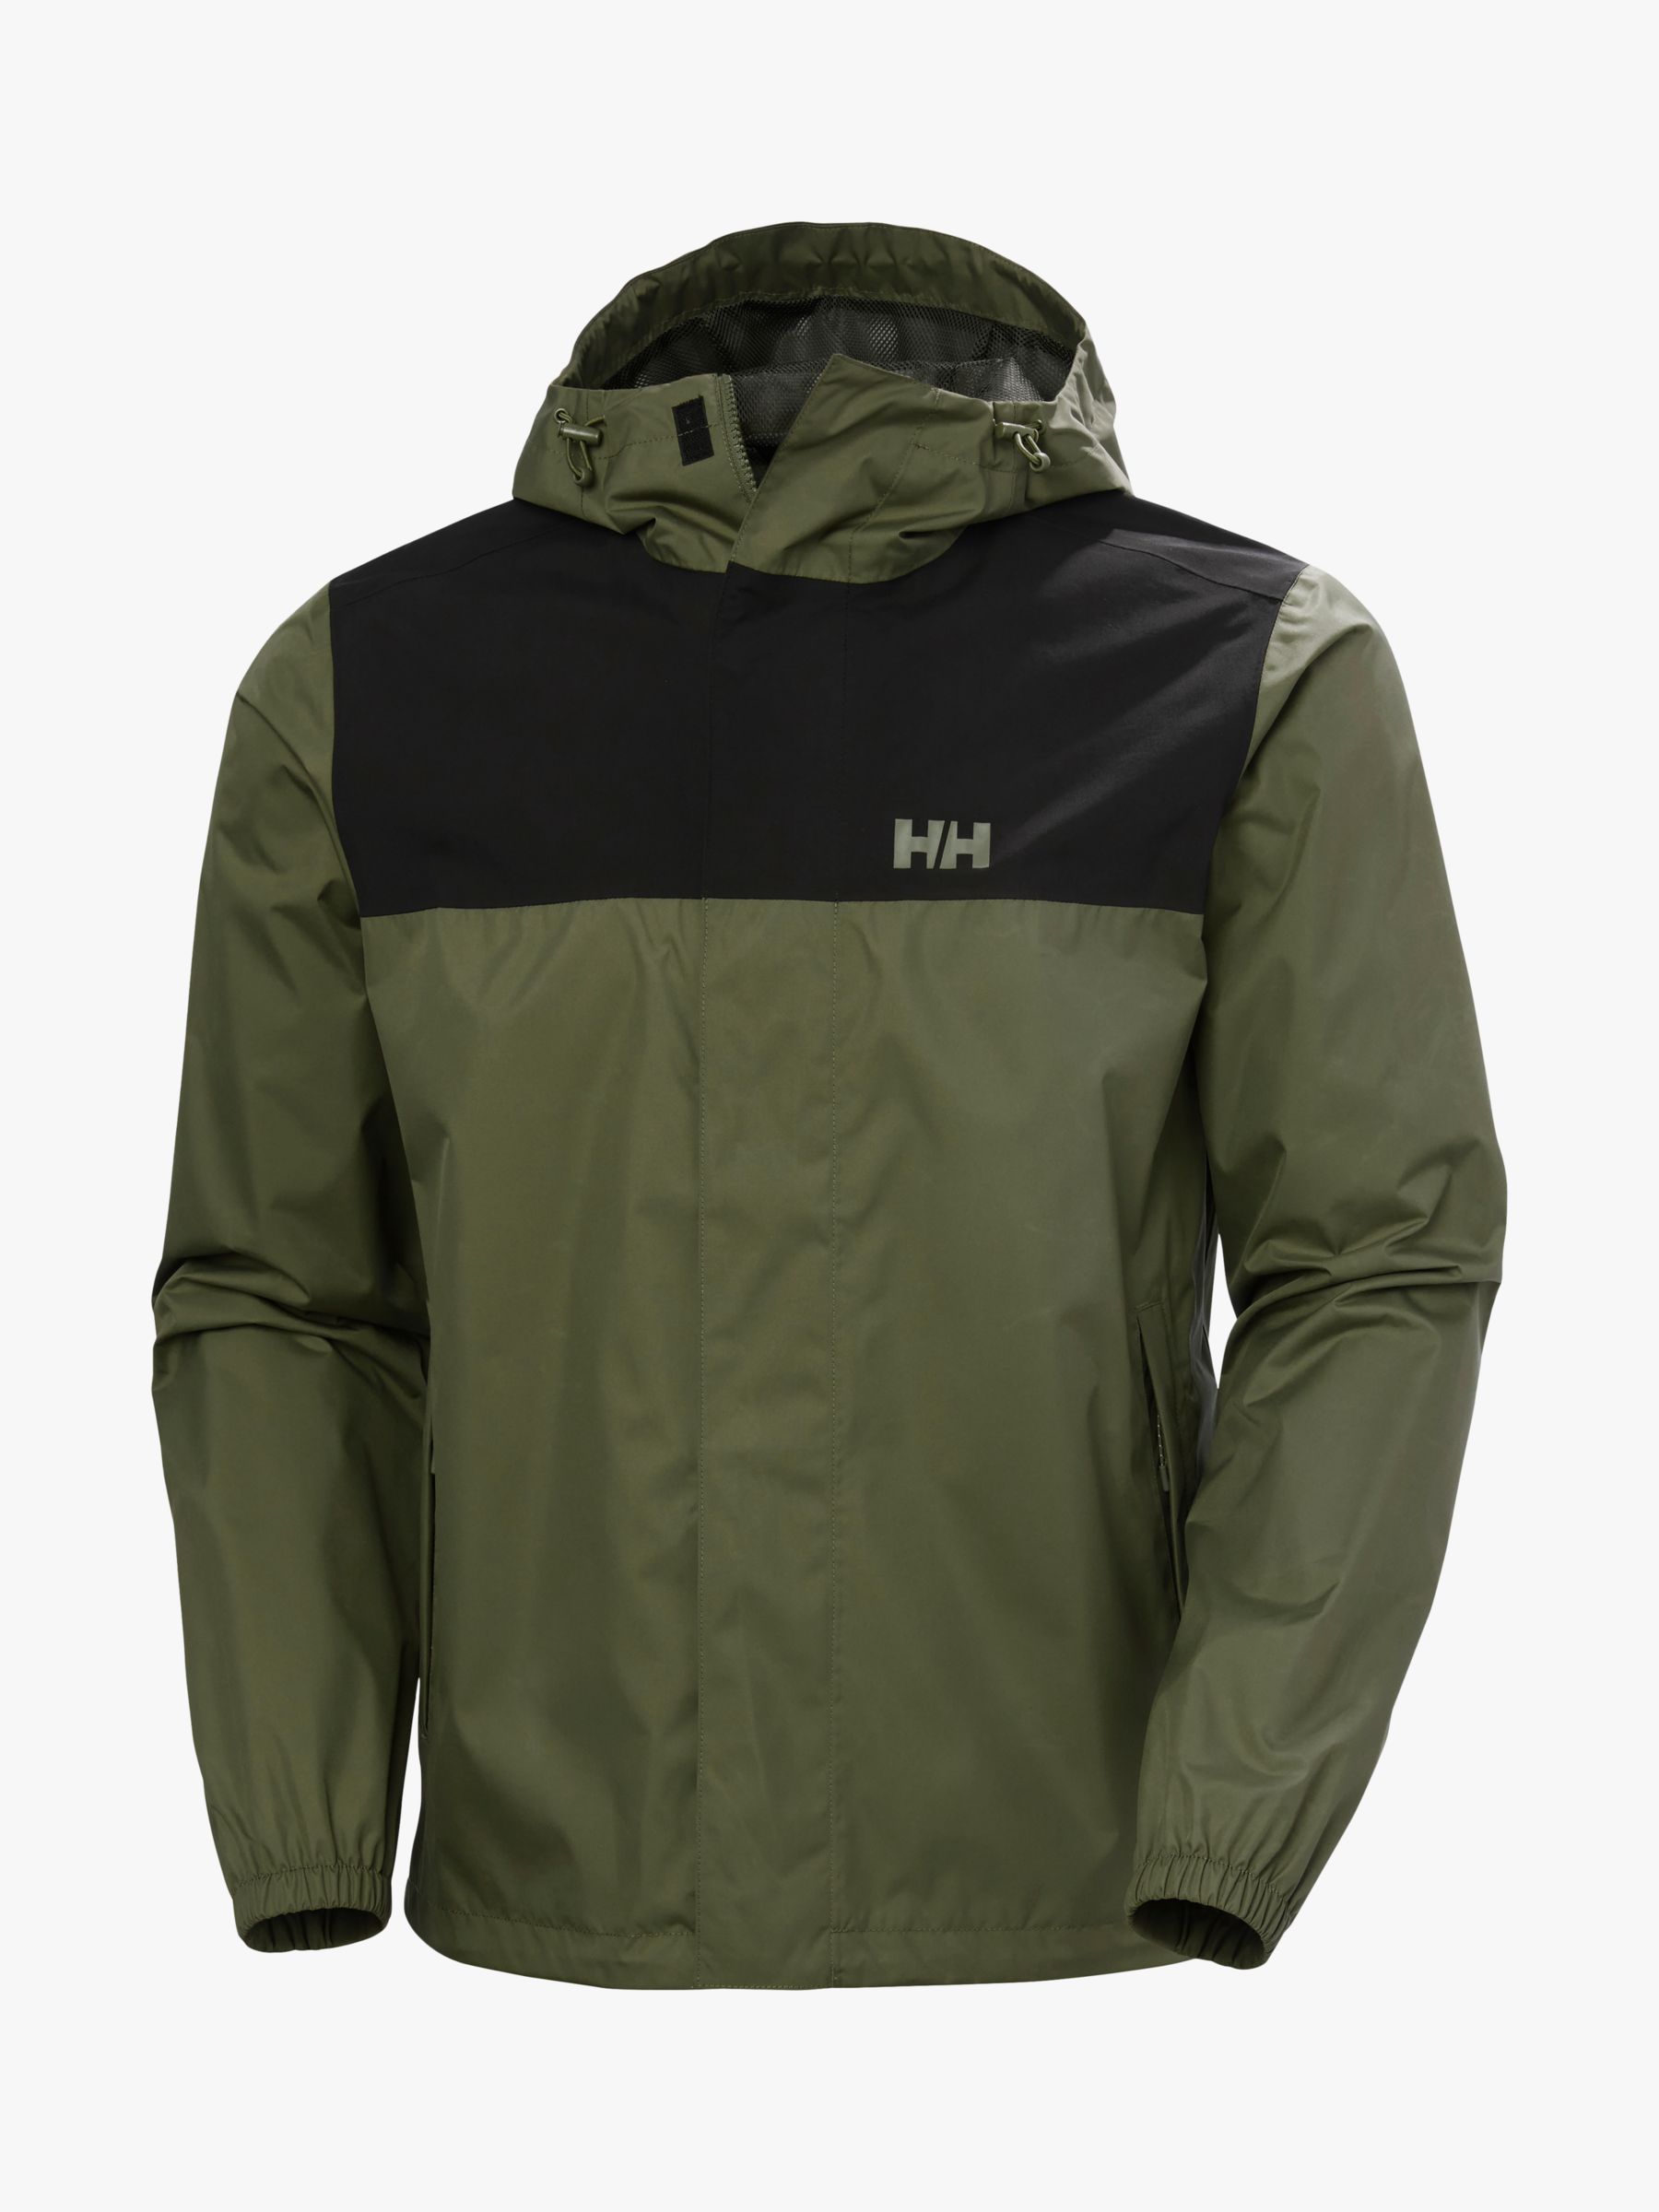 Helly Hansen Vancouver Rain Jacket, Utility Green, XL